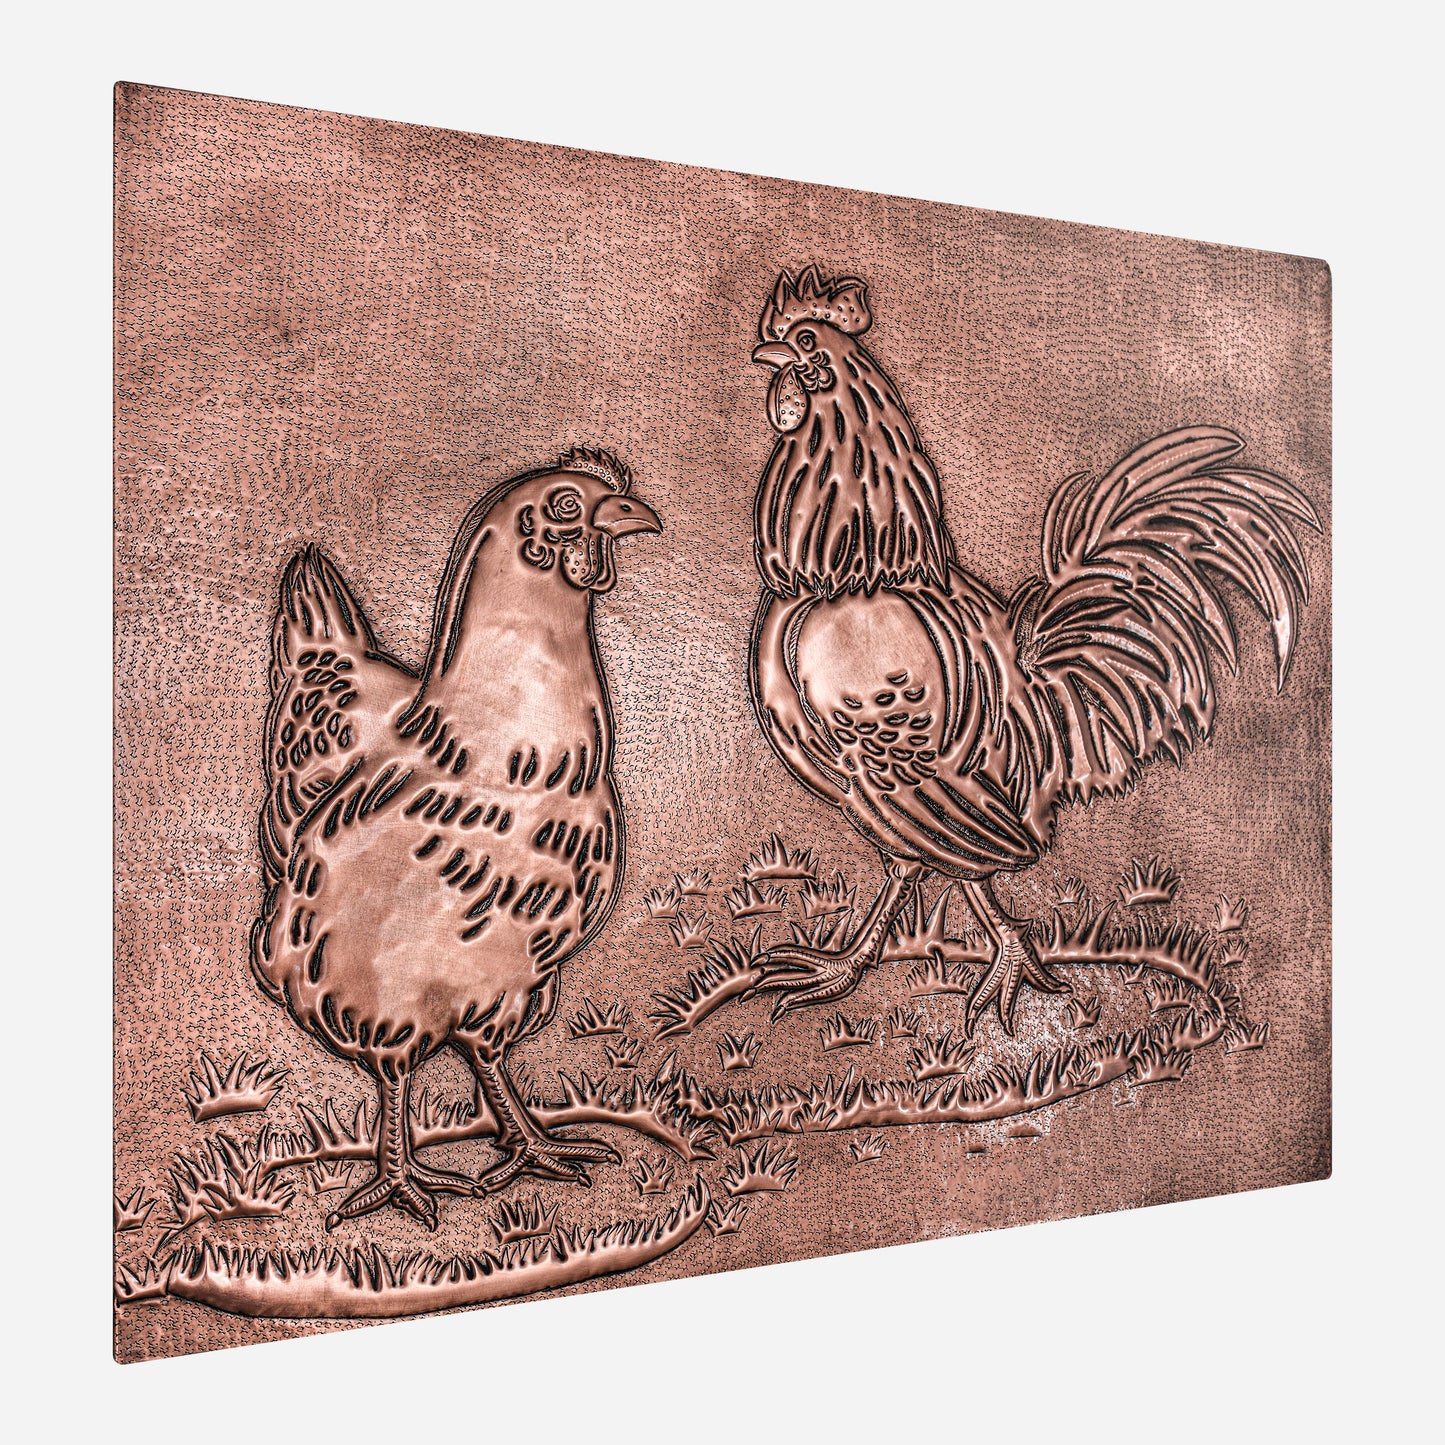 Rooster and Chicken Kitchen Backsplash Tile - 24"x30" Copper